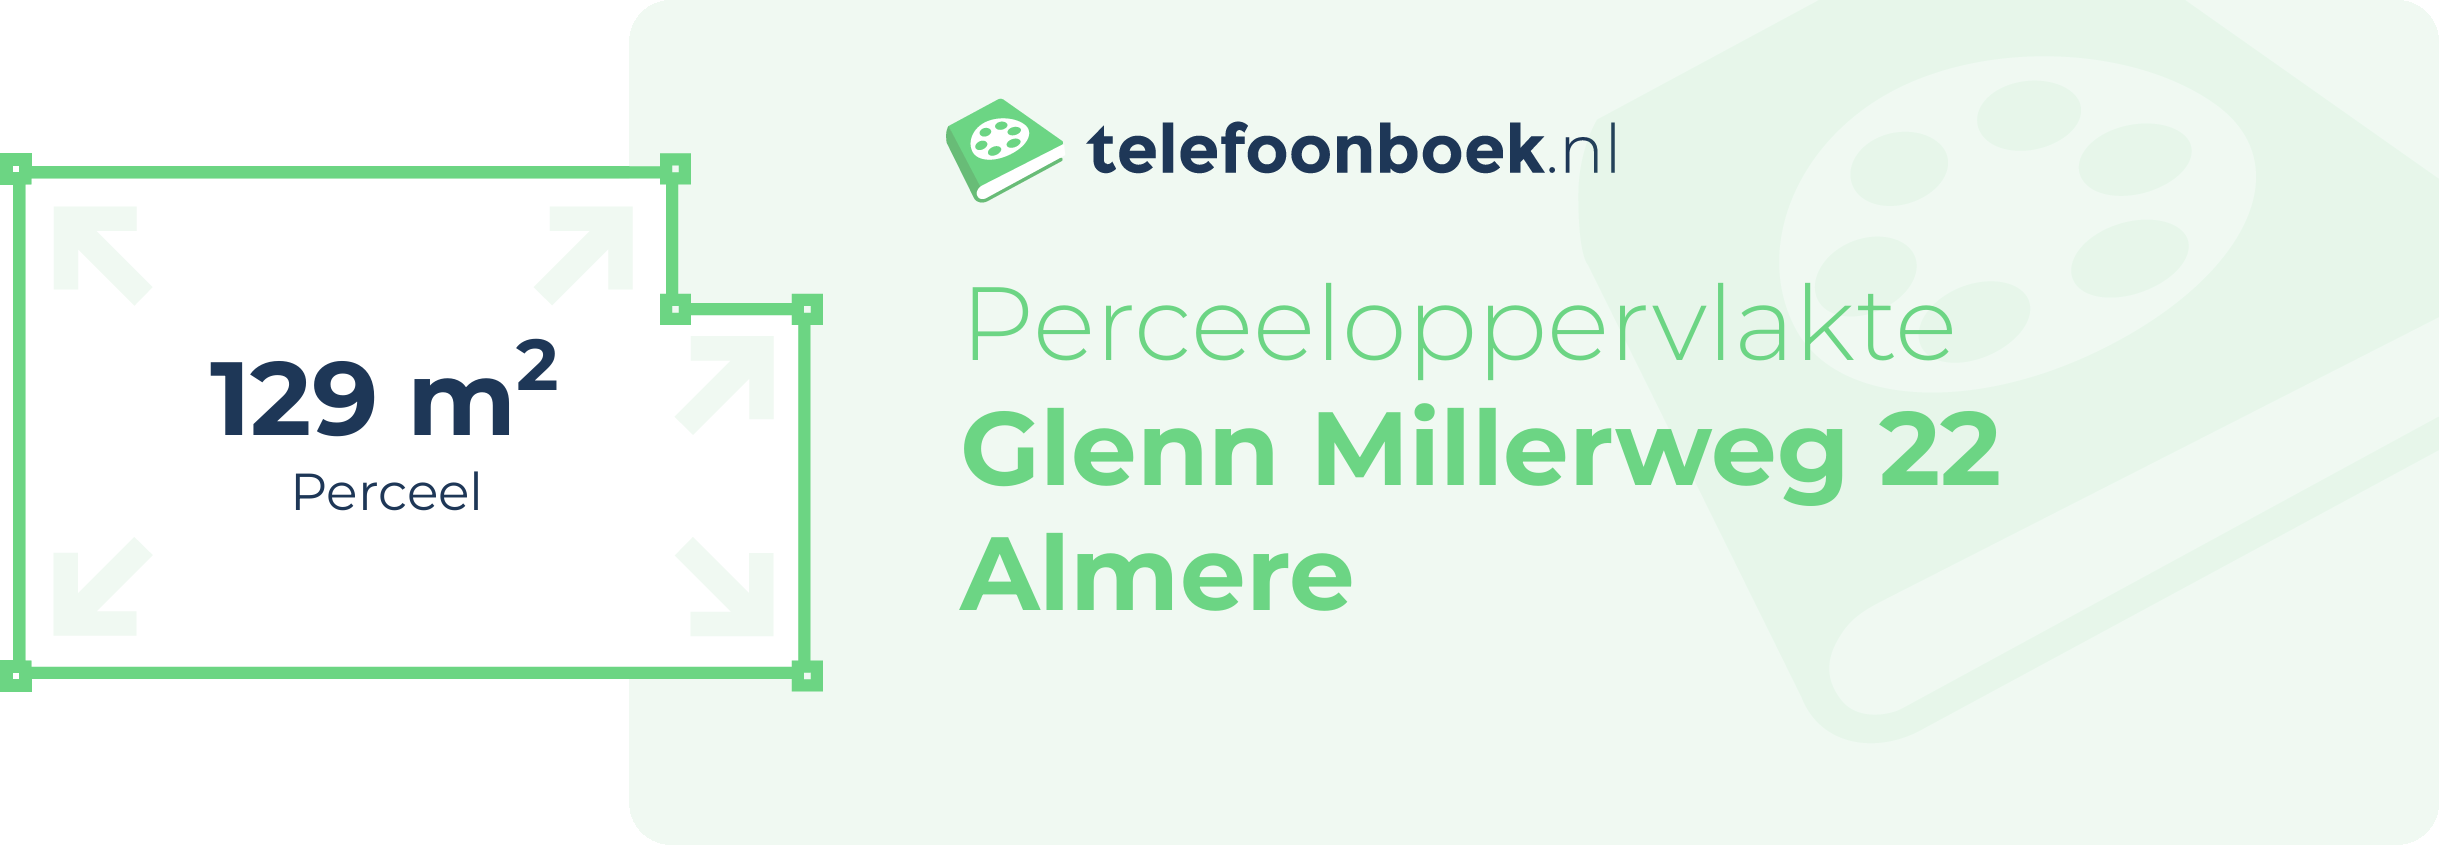 Perceeloppervlakte Glenn Millerweg 22 Almere